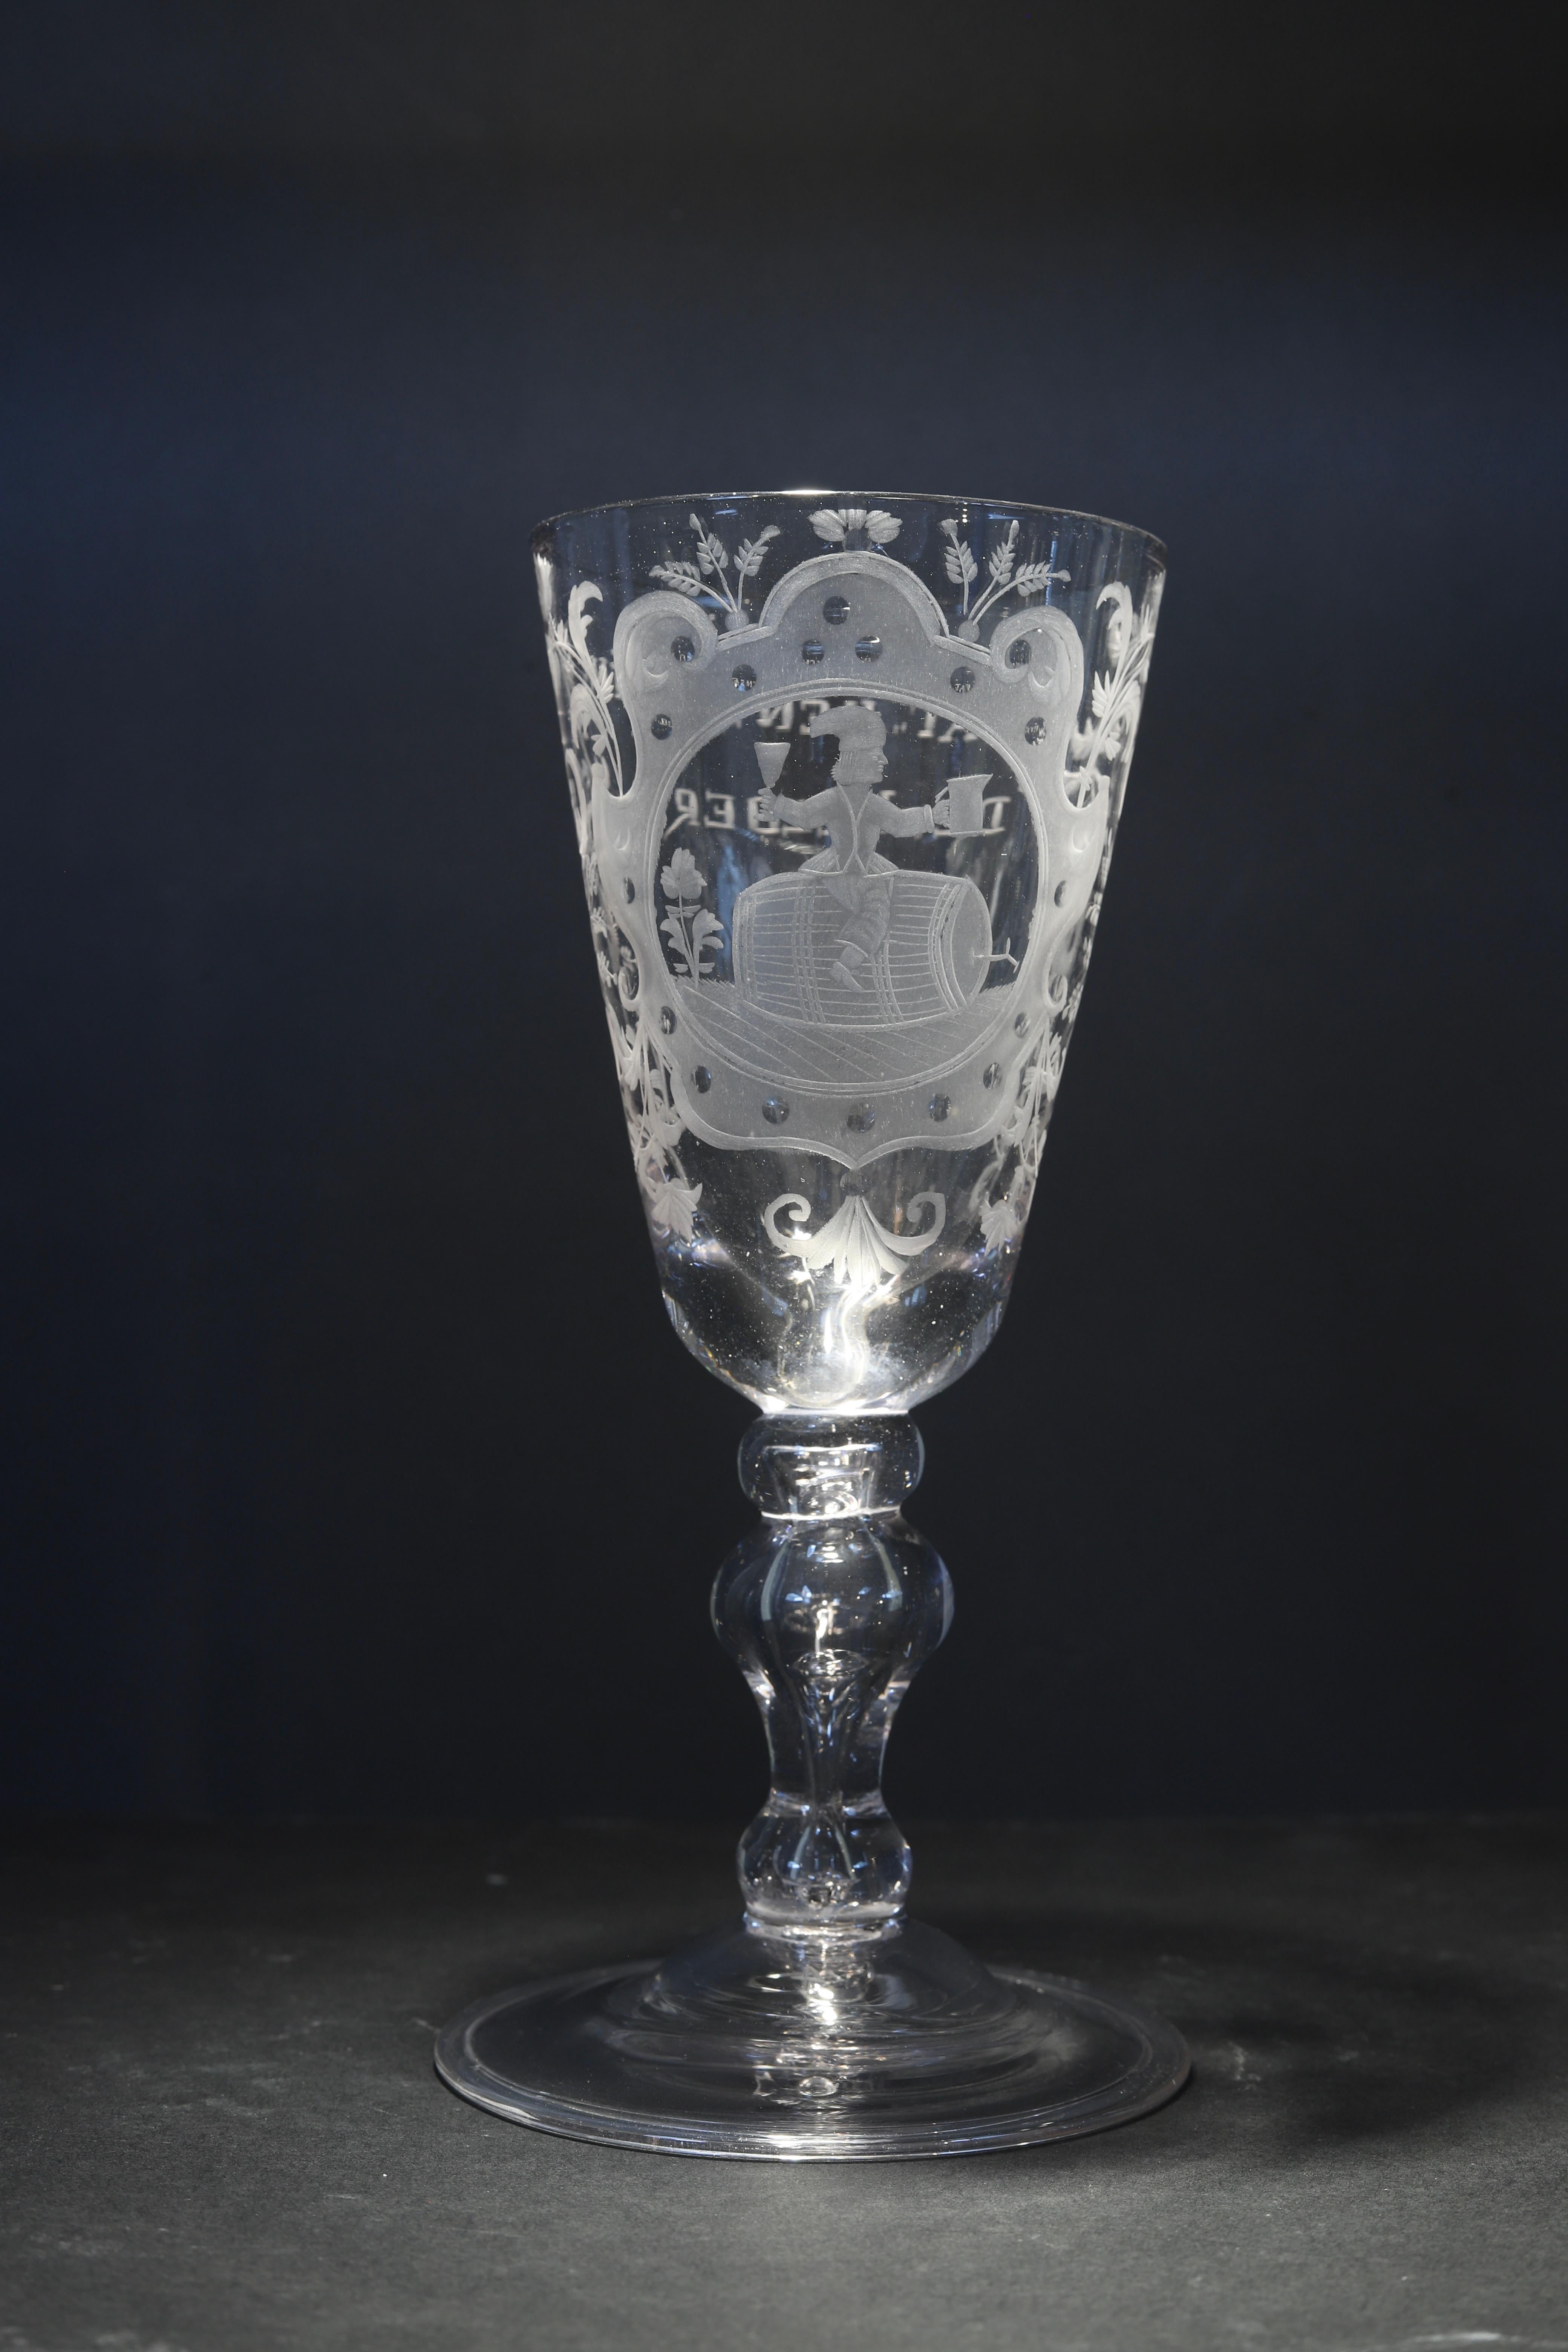 Die Niederlande
Gravur: Niederländisch
Mitte des 18. Jahrhunderts

Großes holländisches graviertes Balusterglas, mit großer Trichterschale, die eine formale Kartusche mit einem sitzenden Kerlchen auf einem Weinfass zeigt, das trinkt und anstößt, auf